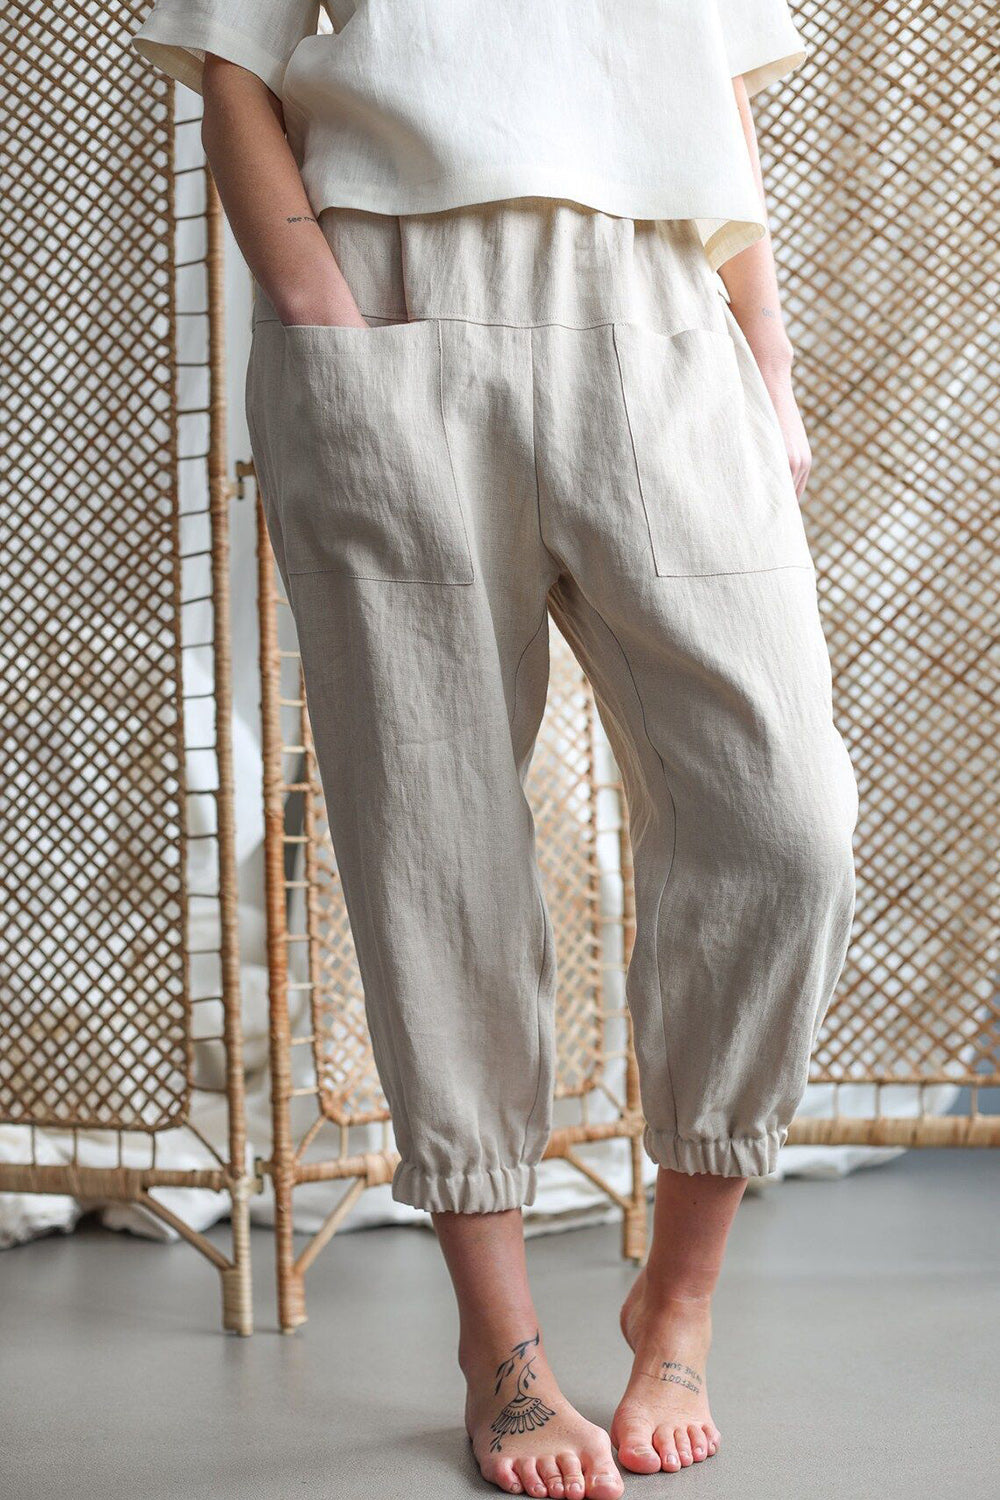 Mid-Rise Waist Pants with Pockets Casual Boho Fashion